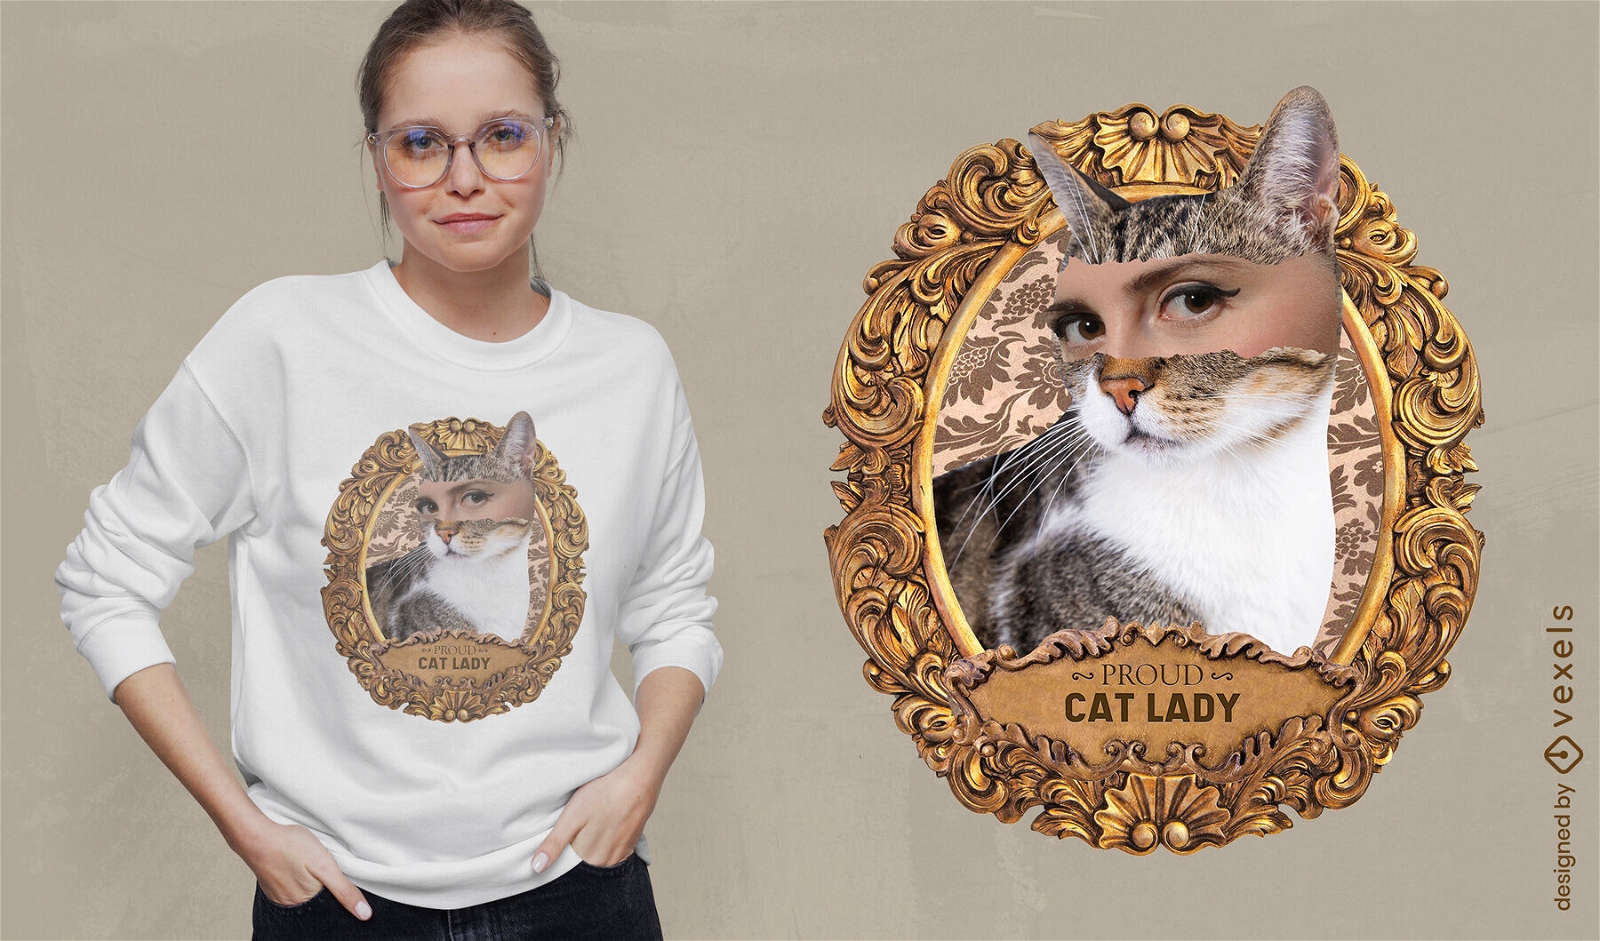 Cat lady vintage t-shirt design